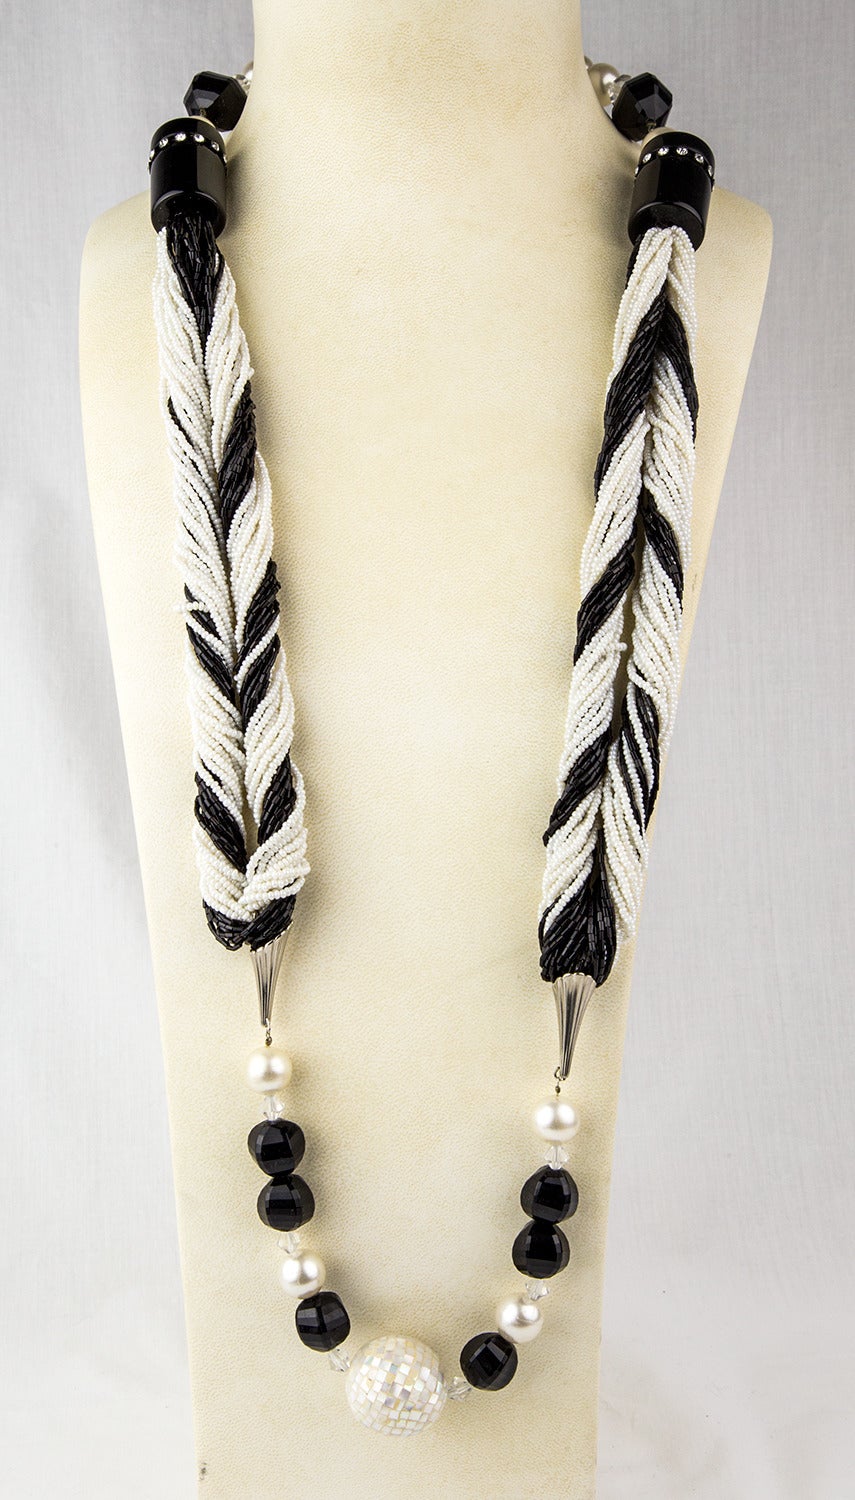 Ce collier noir et blanc exceptionnel est composé d'une combinaison de perles en celluloïd, de perles de rocaille, de perles noires tubulaires incrustées d'un cercle de strass, d'une perle boule de discothèque, de fausses perles, de cristaux et